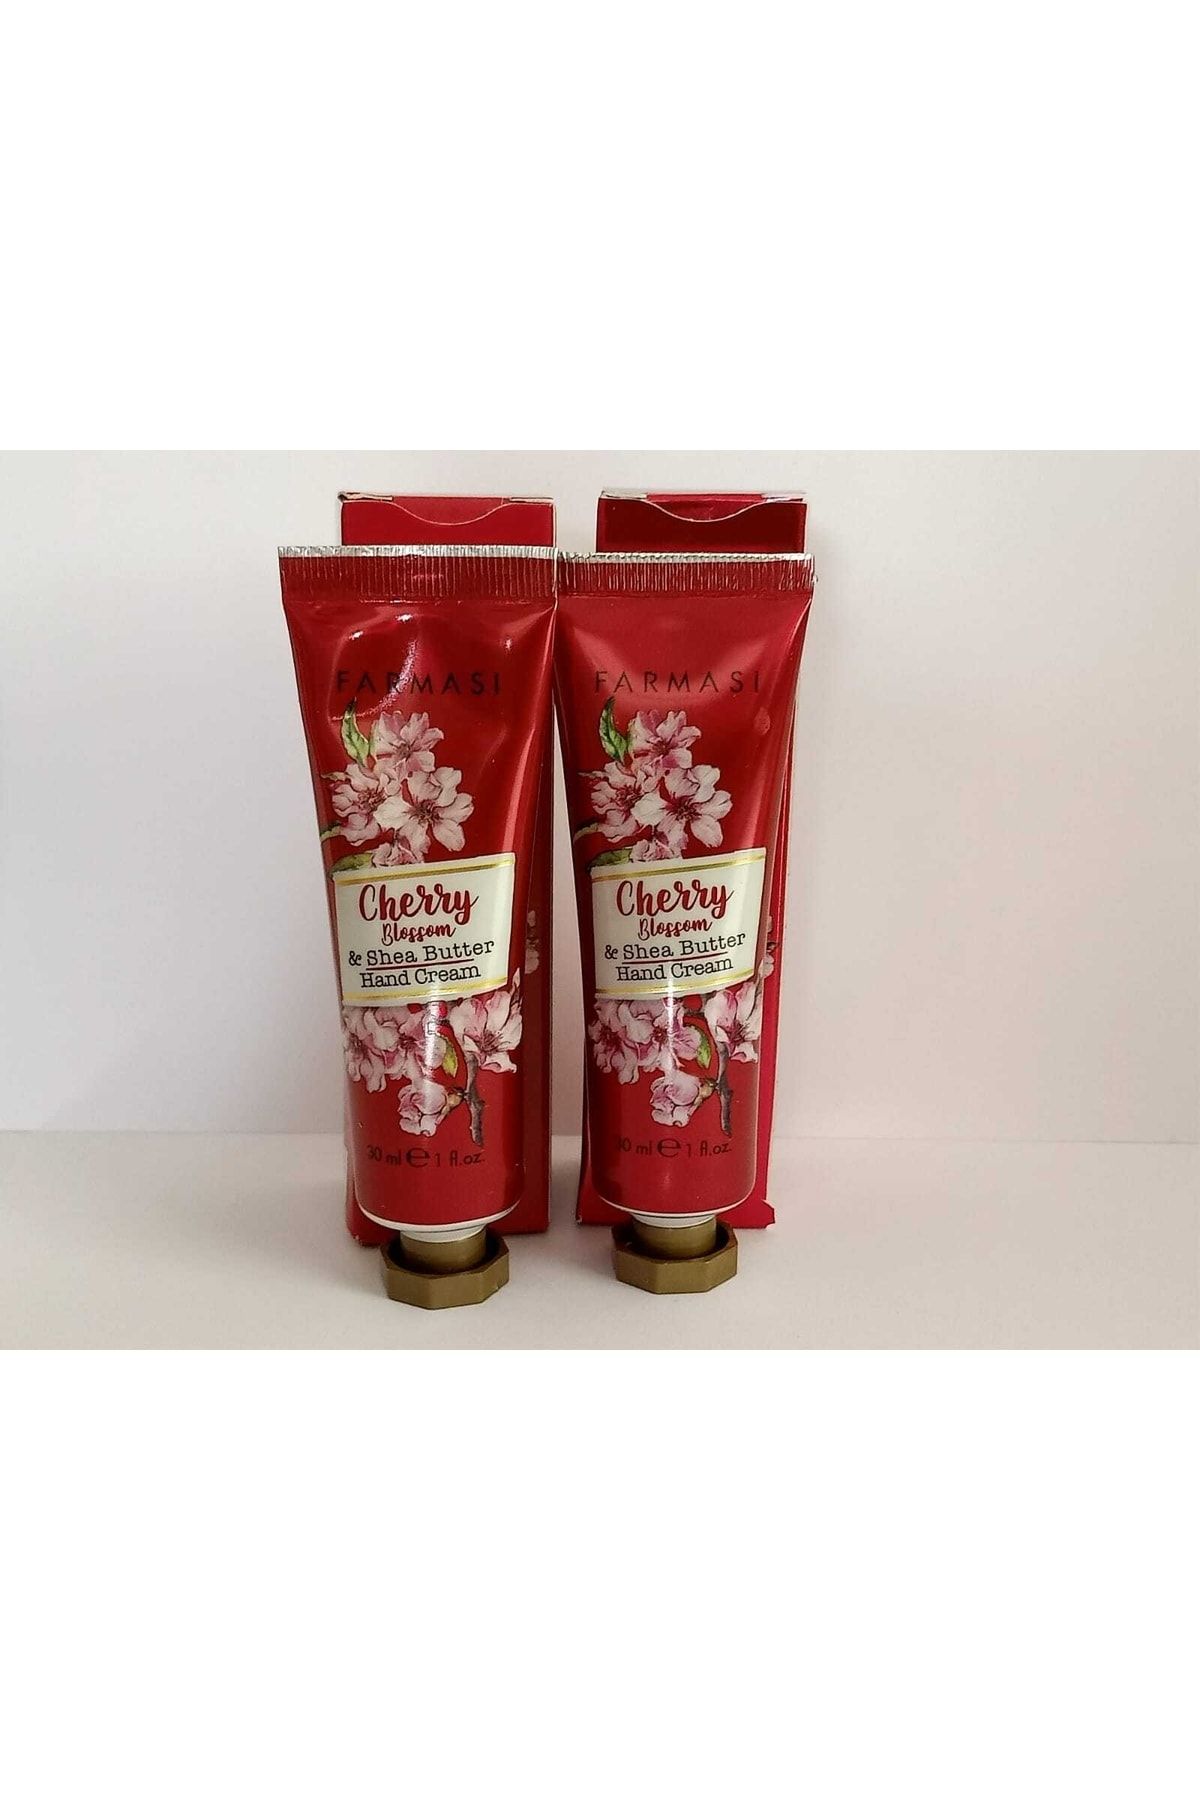 Farmasi Kiraz Çiçeği & Shea Yağı 2'li El Kremi 30 ml